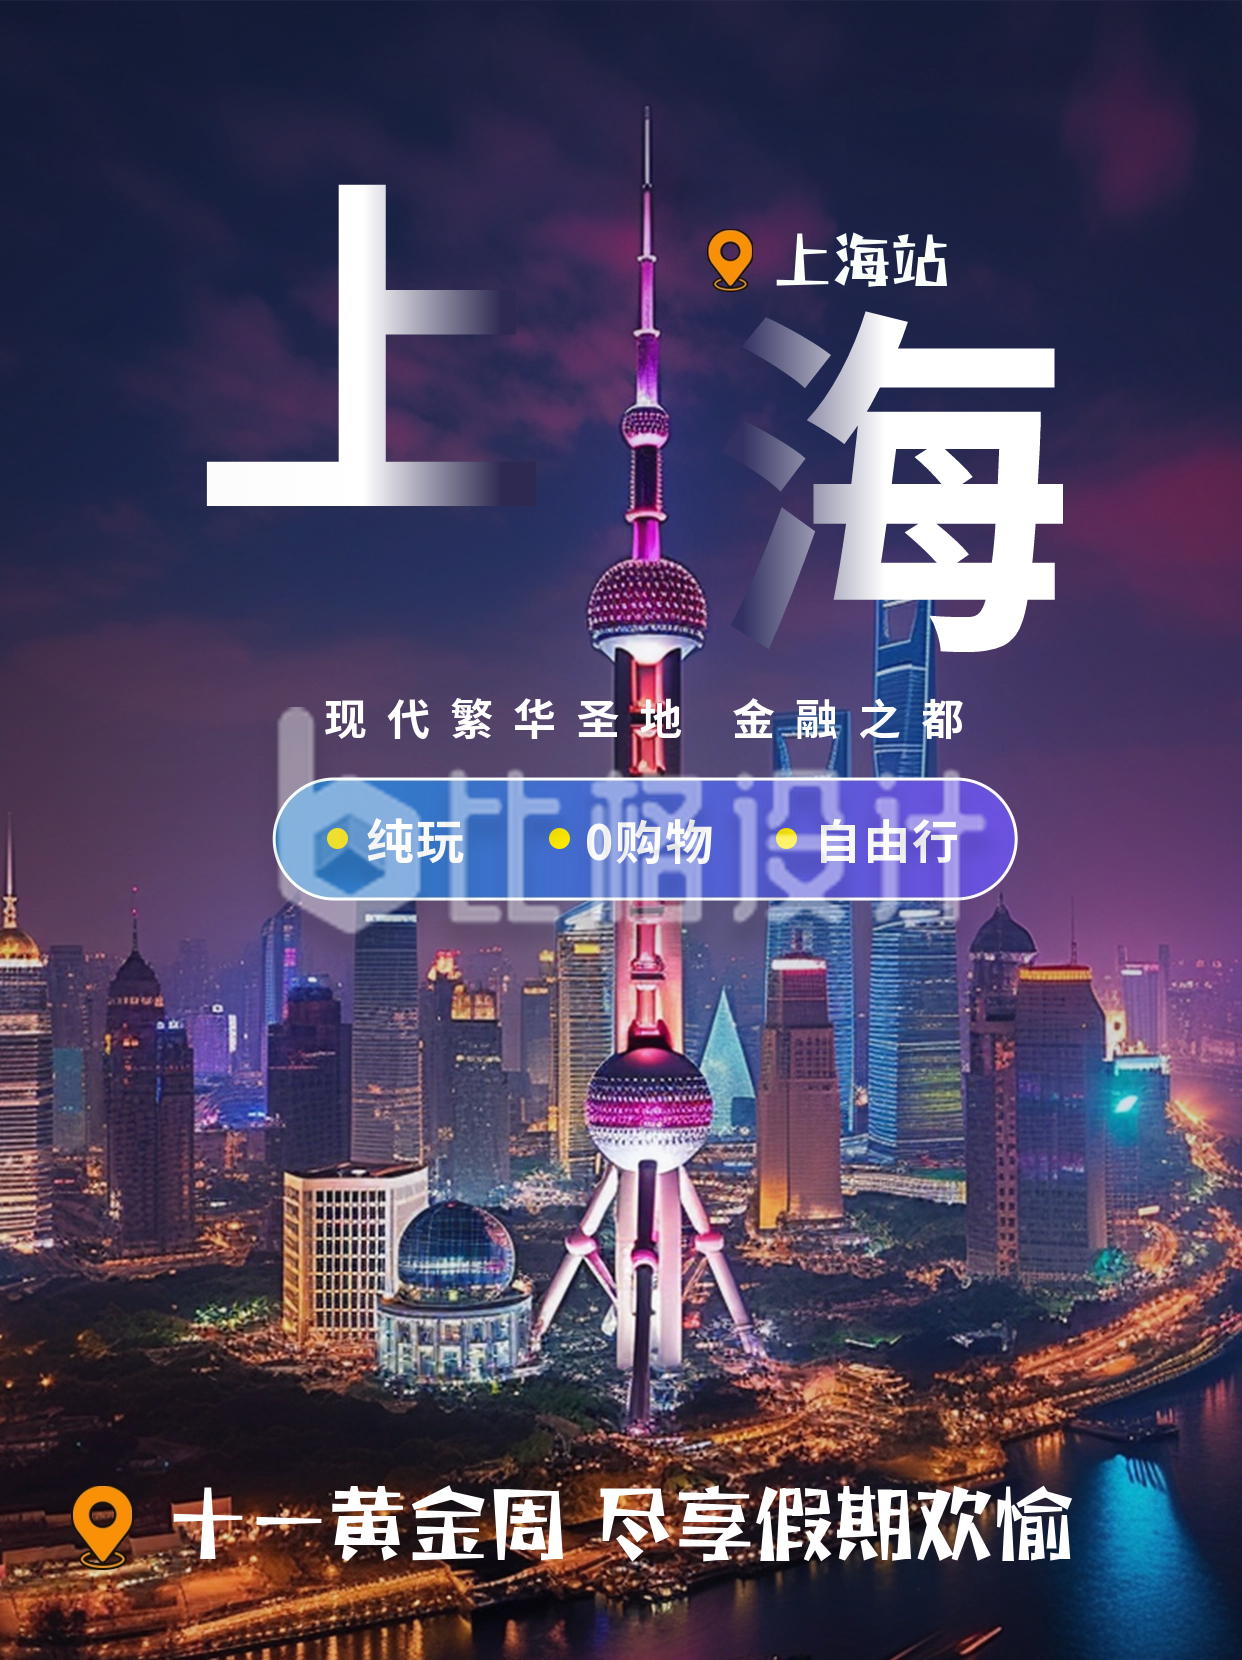 上海旅游景点推荐小红书封面